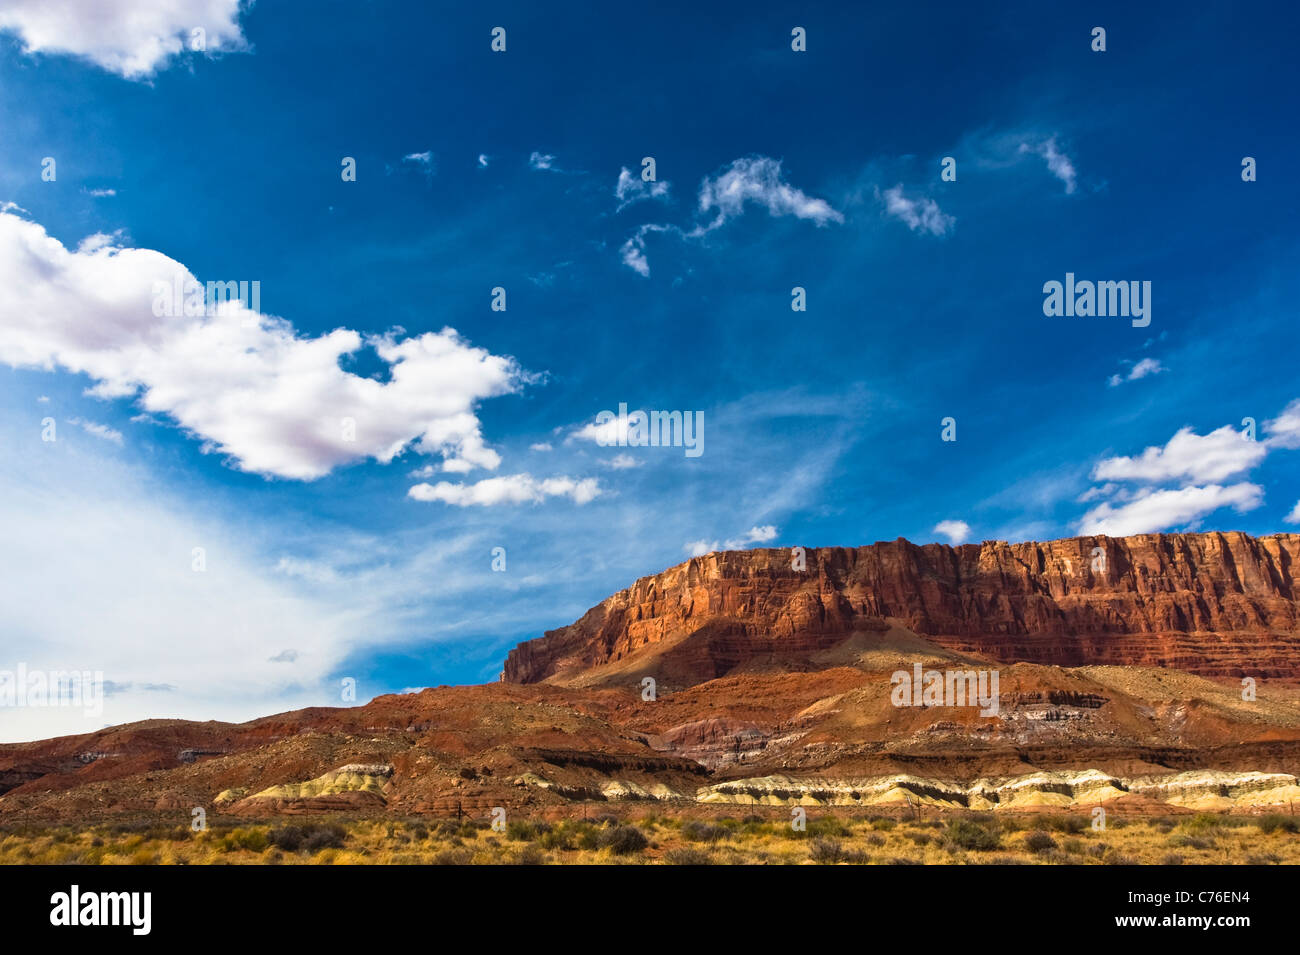 Il Paria Canyon-Vermilion scogliere deserto è un 109,400 acri (442 km²) wilderness area situata nel nord dell'Arizona. Foto Stock